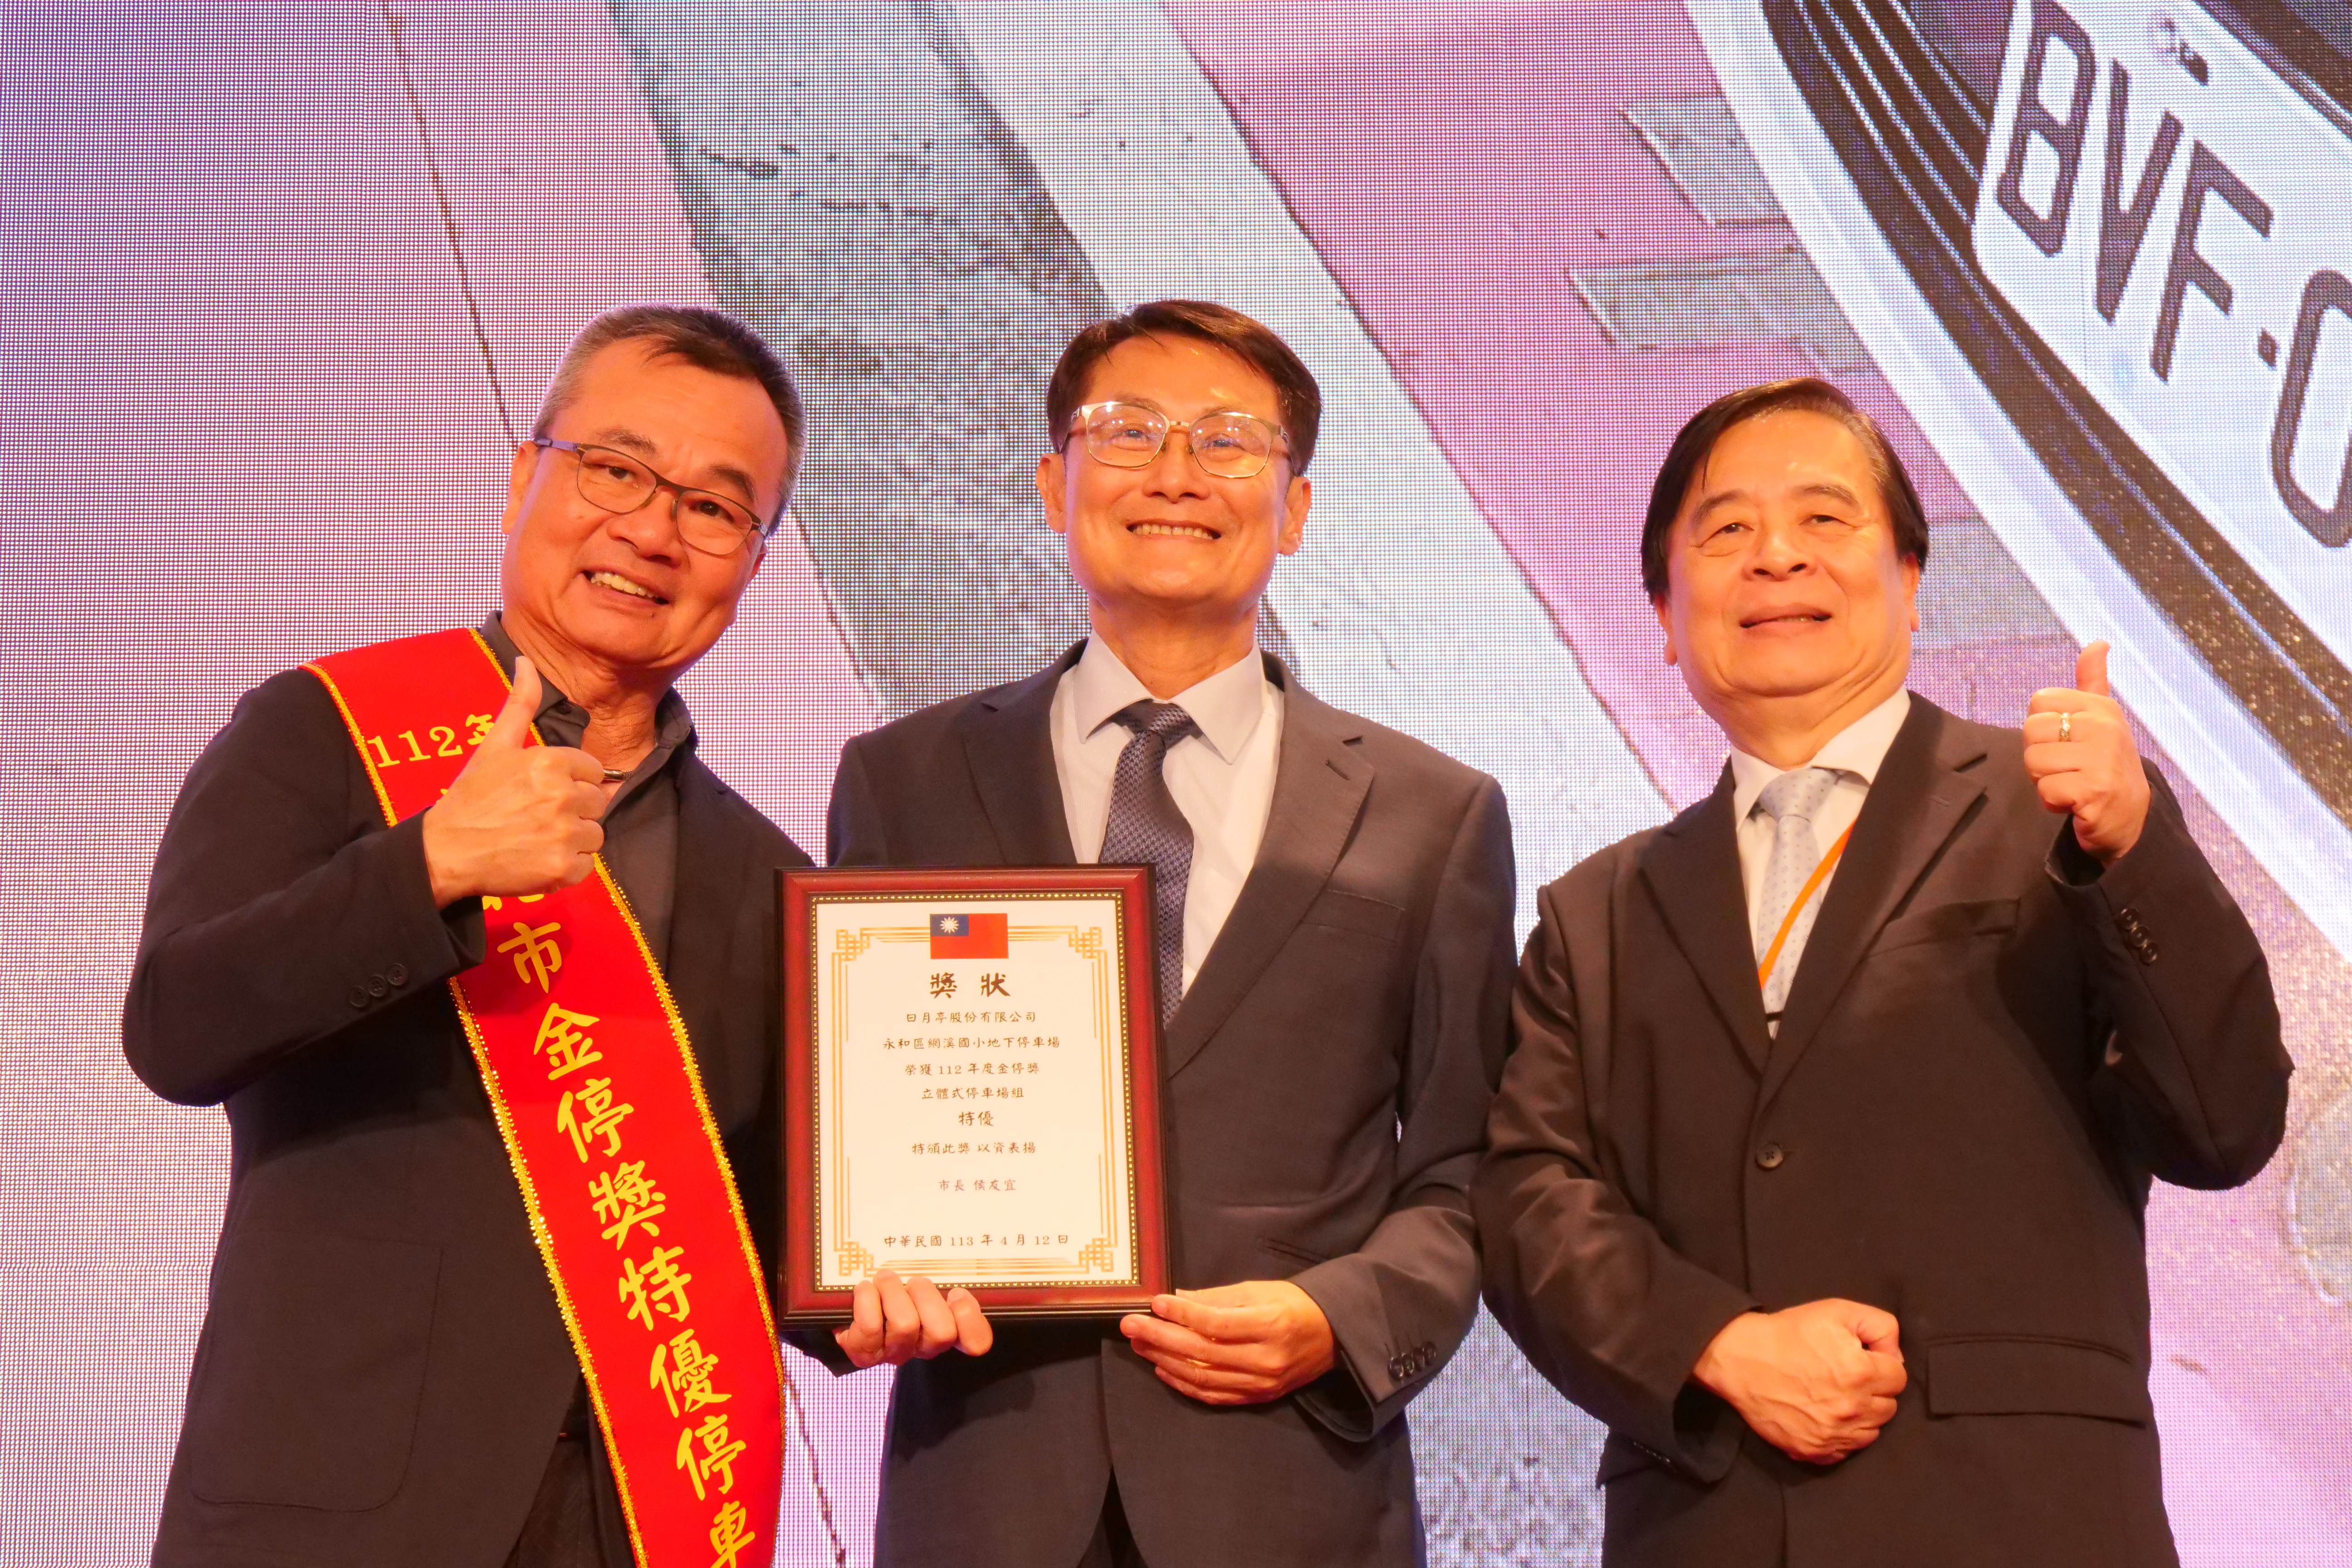 新北市副市長陳純敬（中）頒獎表揚特優停車場業者